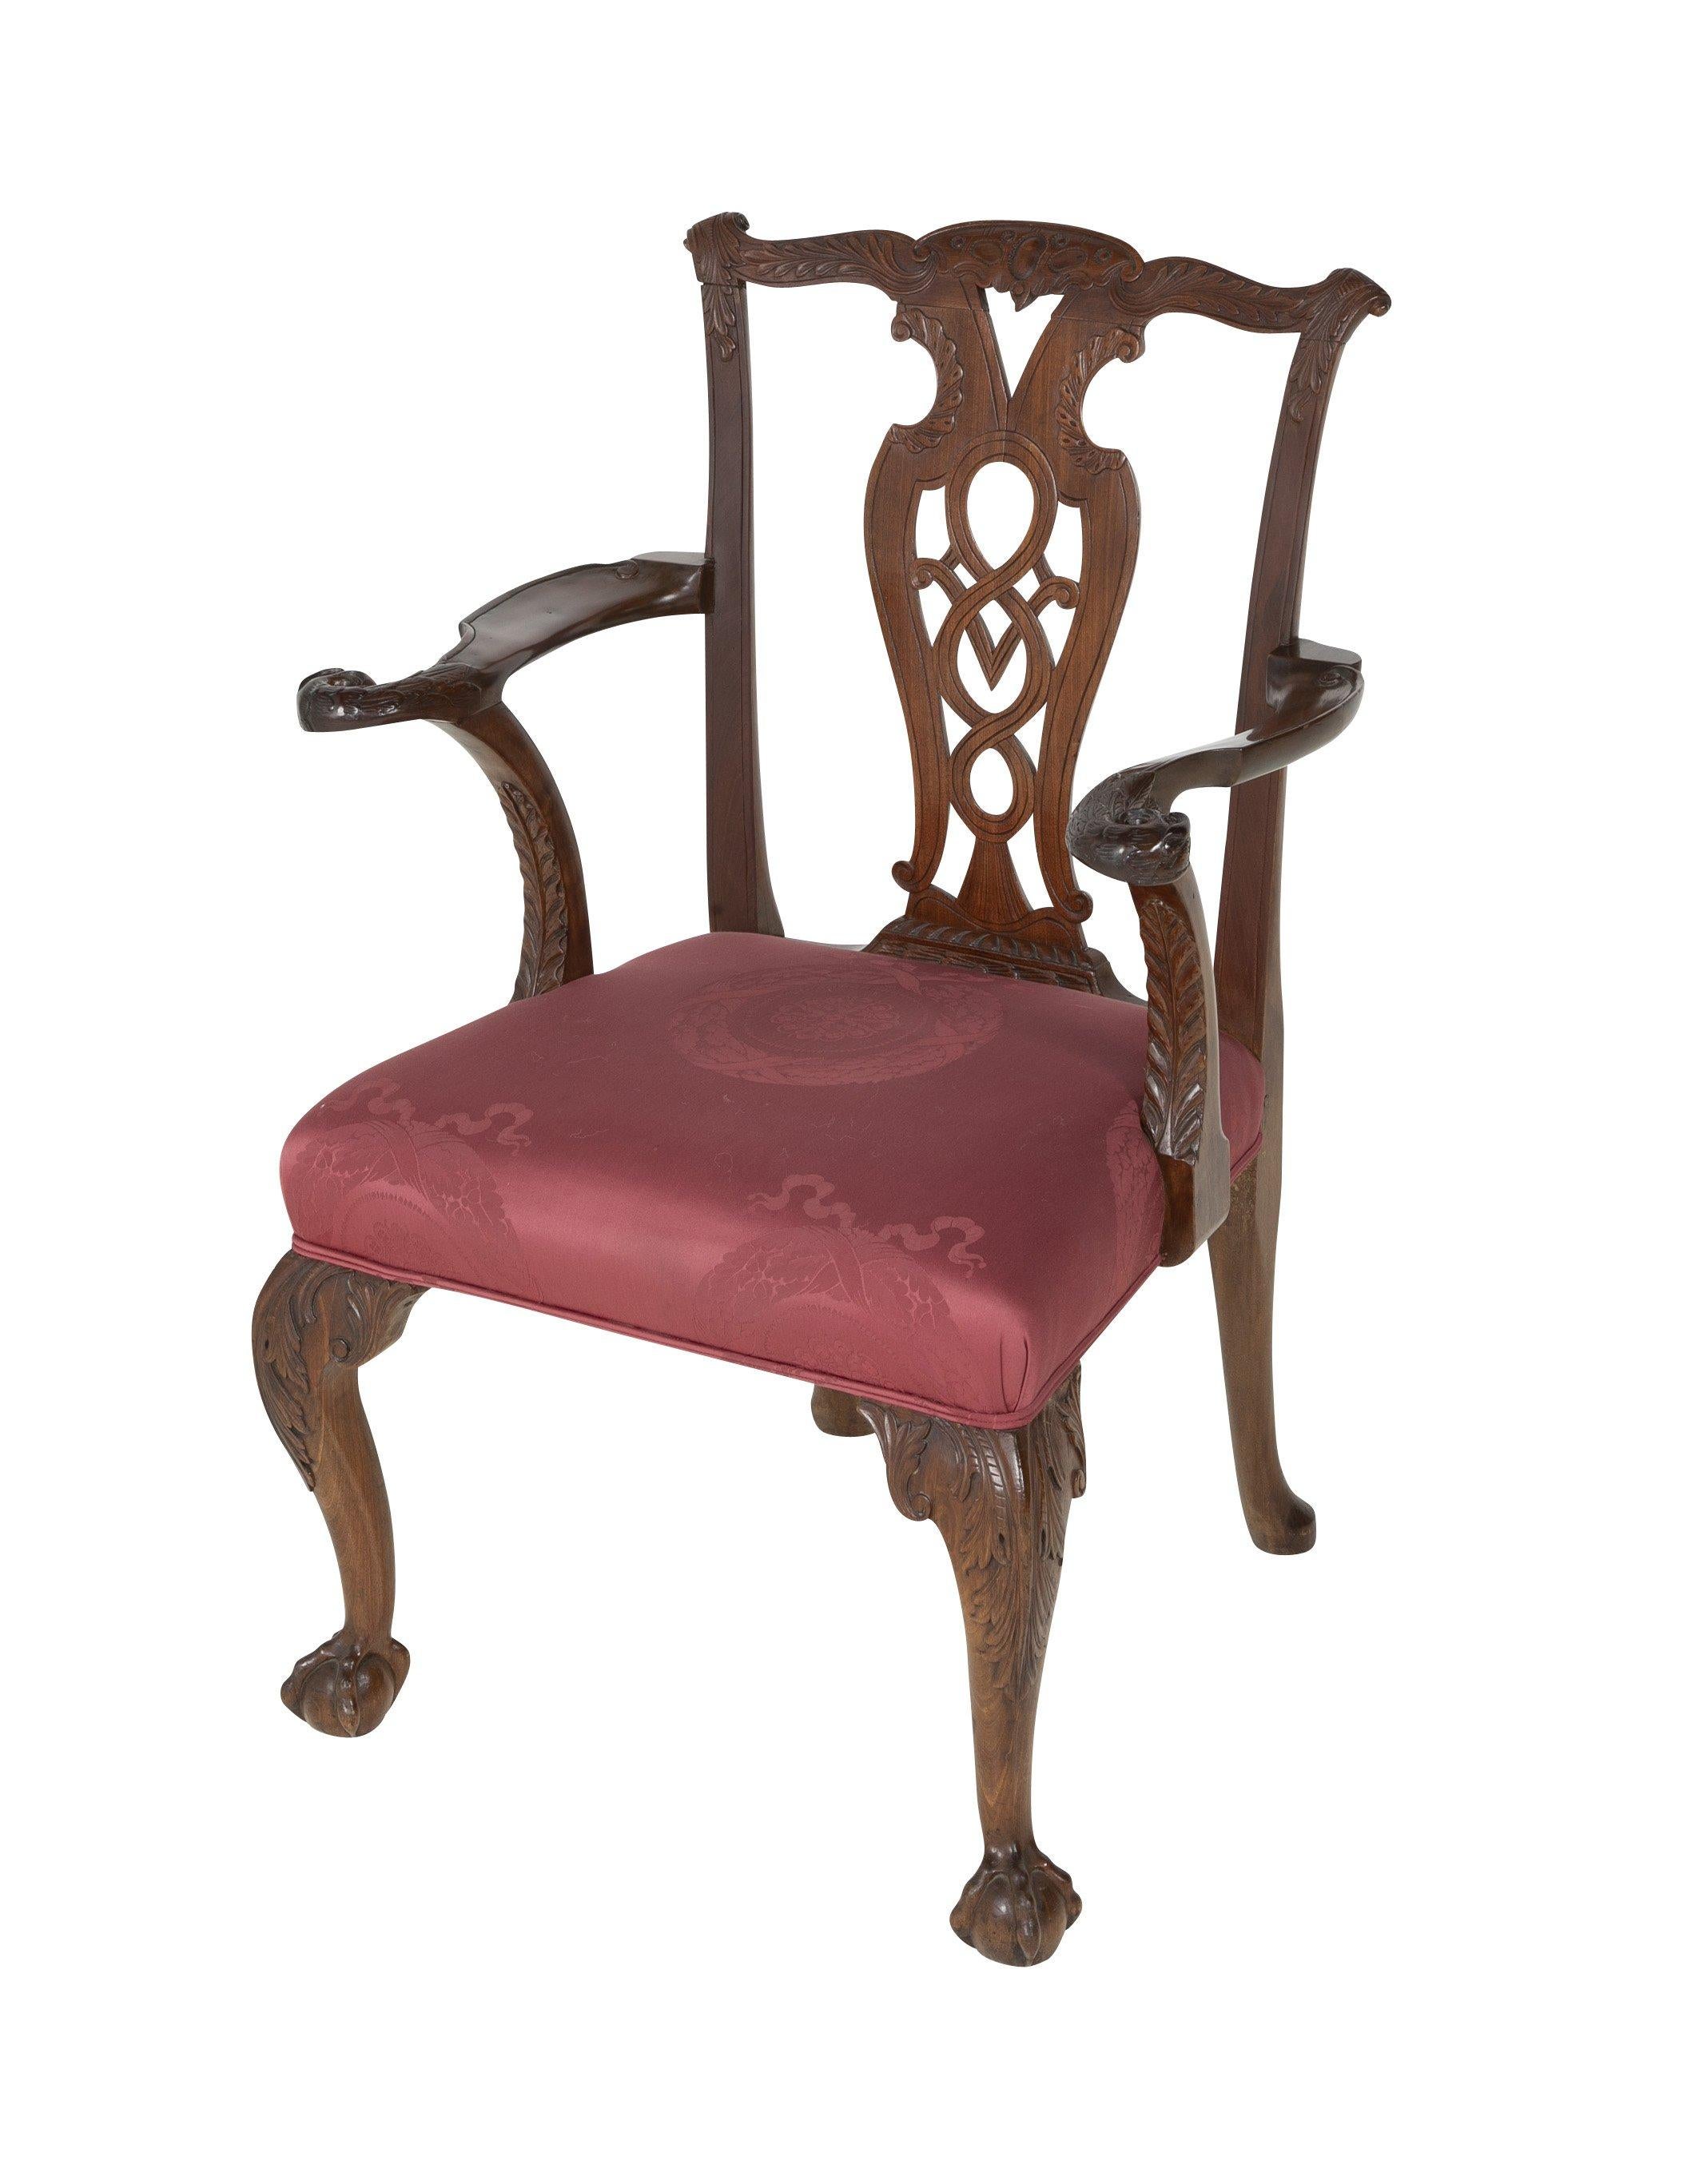 George II (Chippendale) Periode Adlerarm Kugel und Klaue Fuß geschnitzt Sessel von Padouk Holz, um 1760.

Maße: Sitzhöhe 18,5